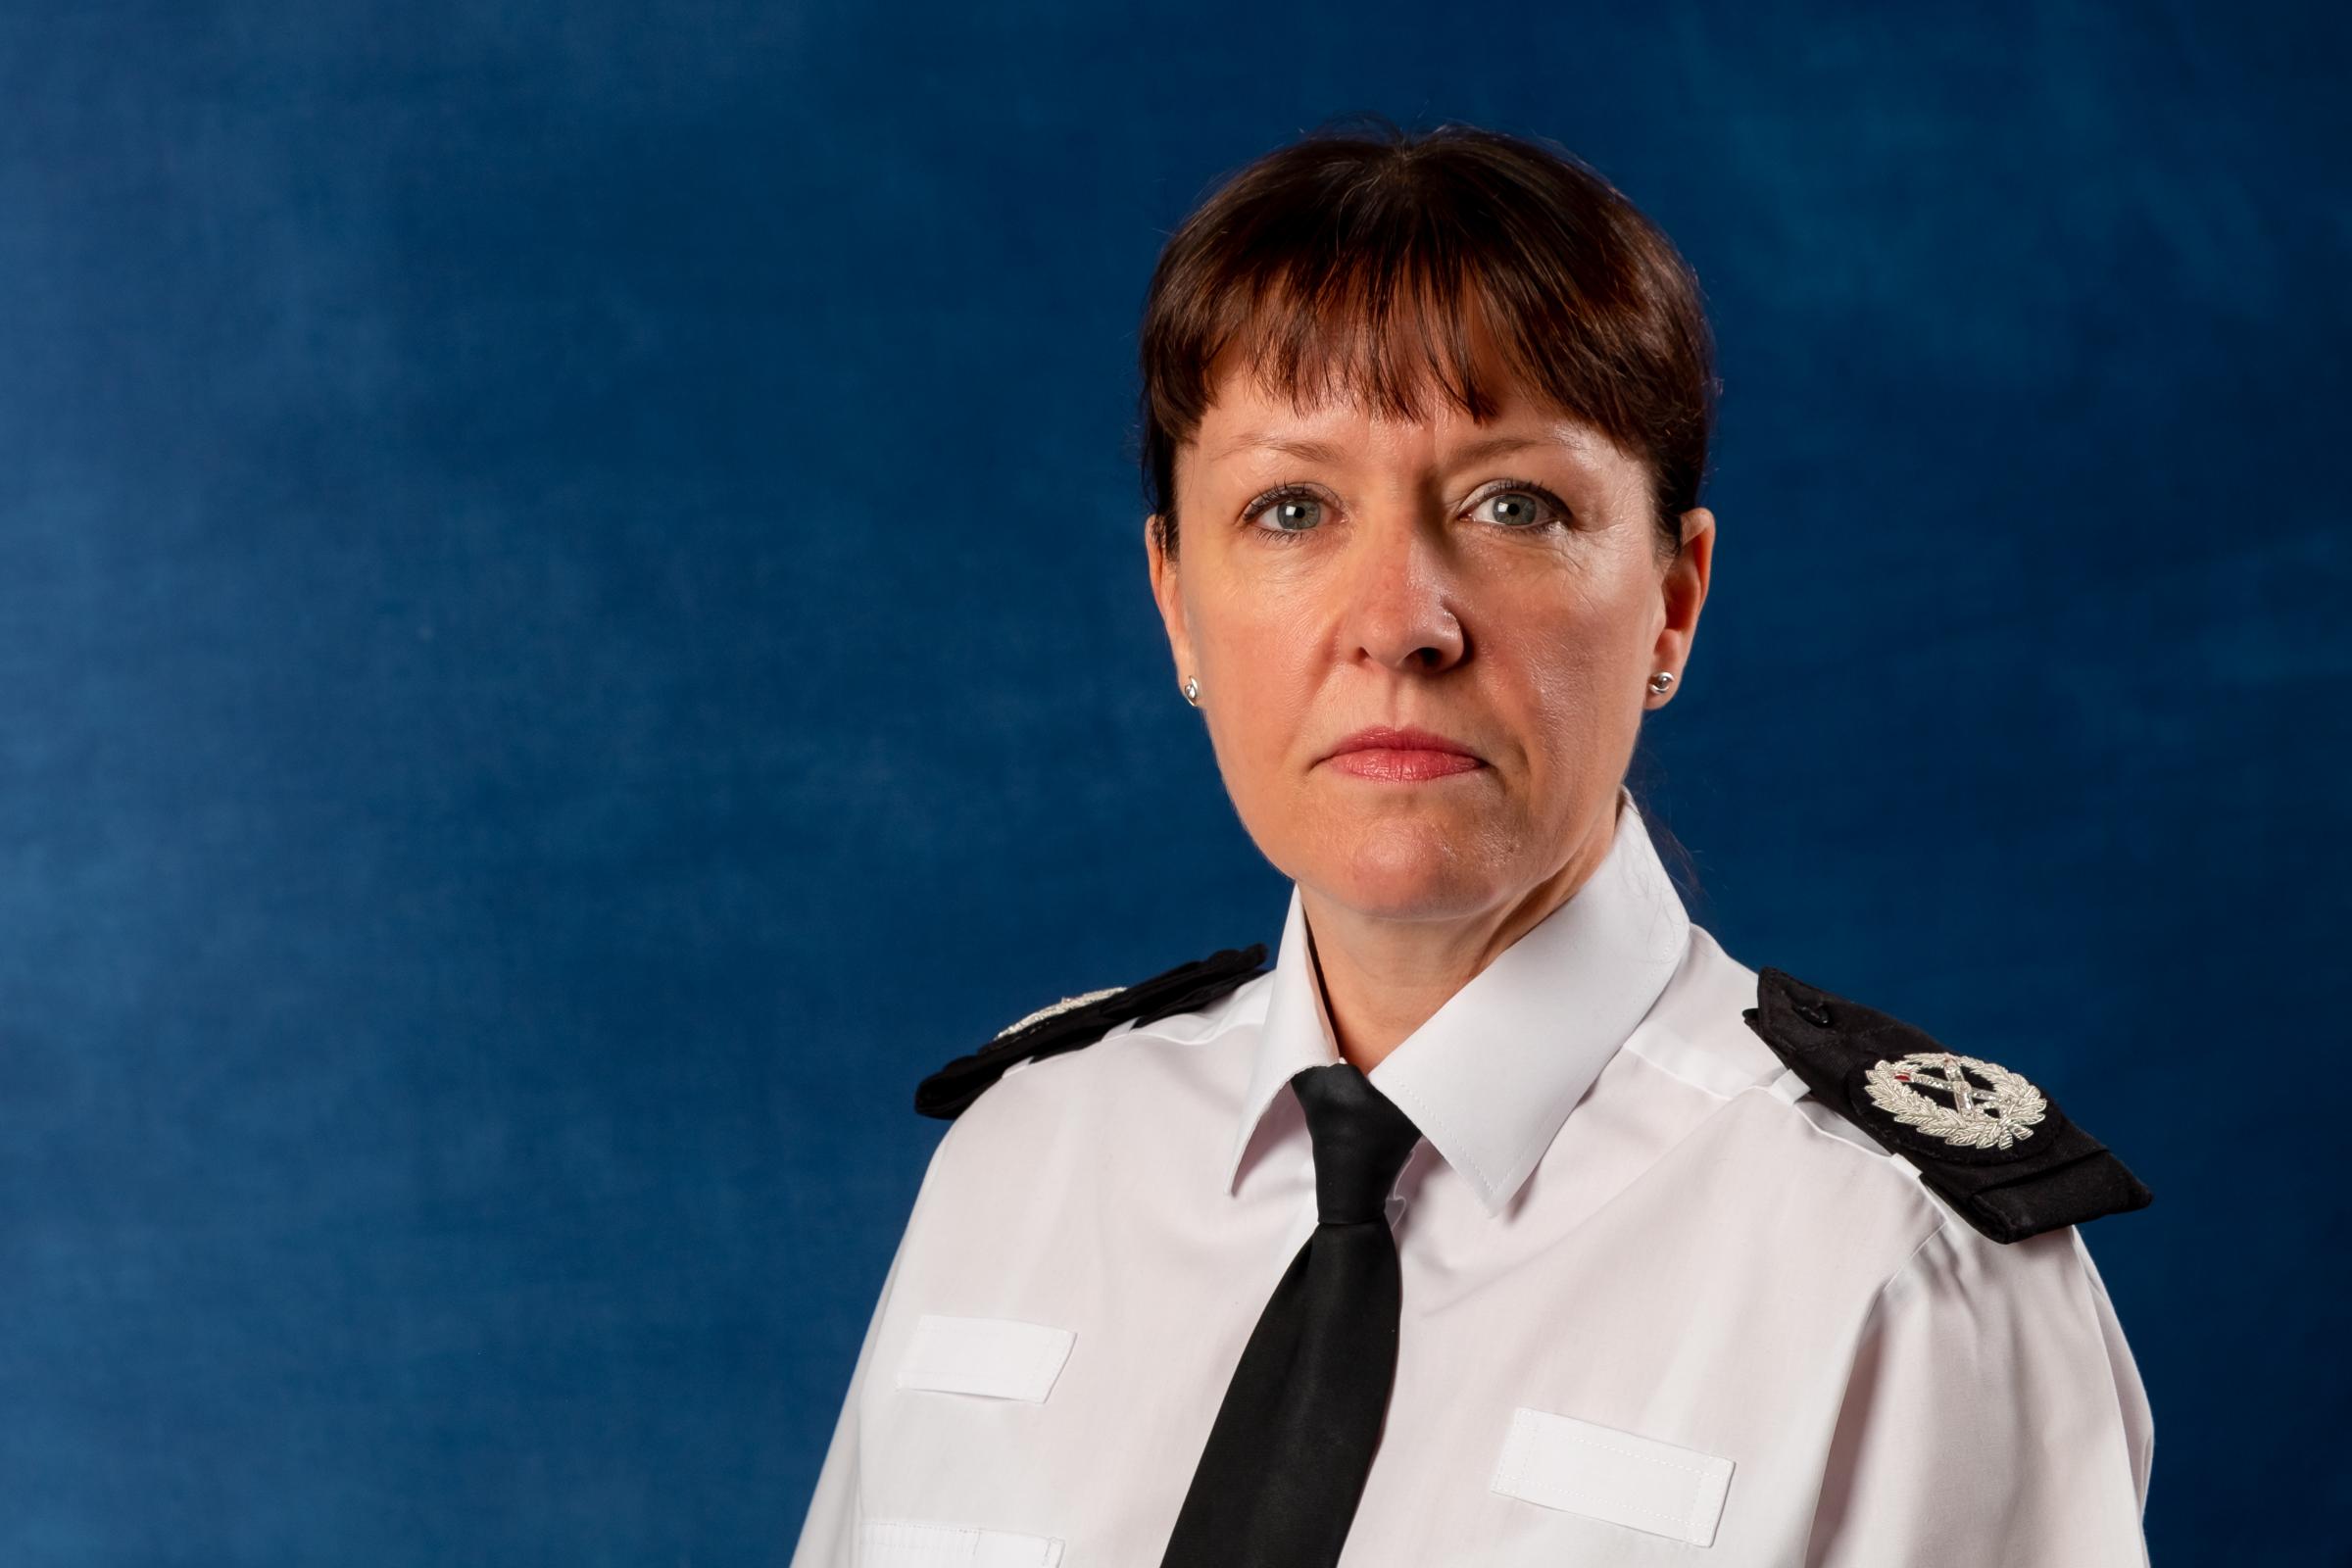 Deputy Chief Constable Julia Chapman